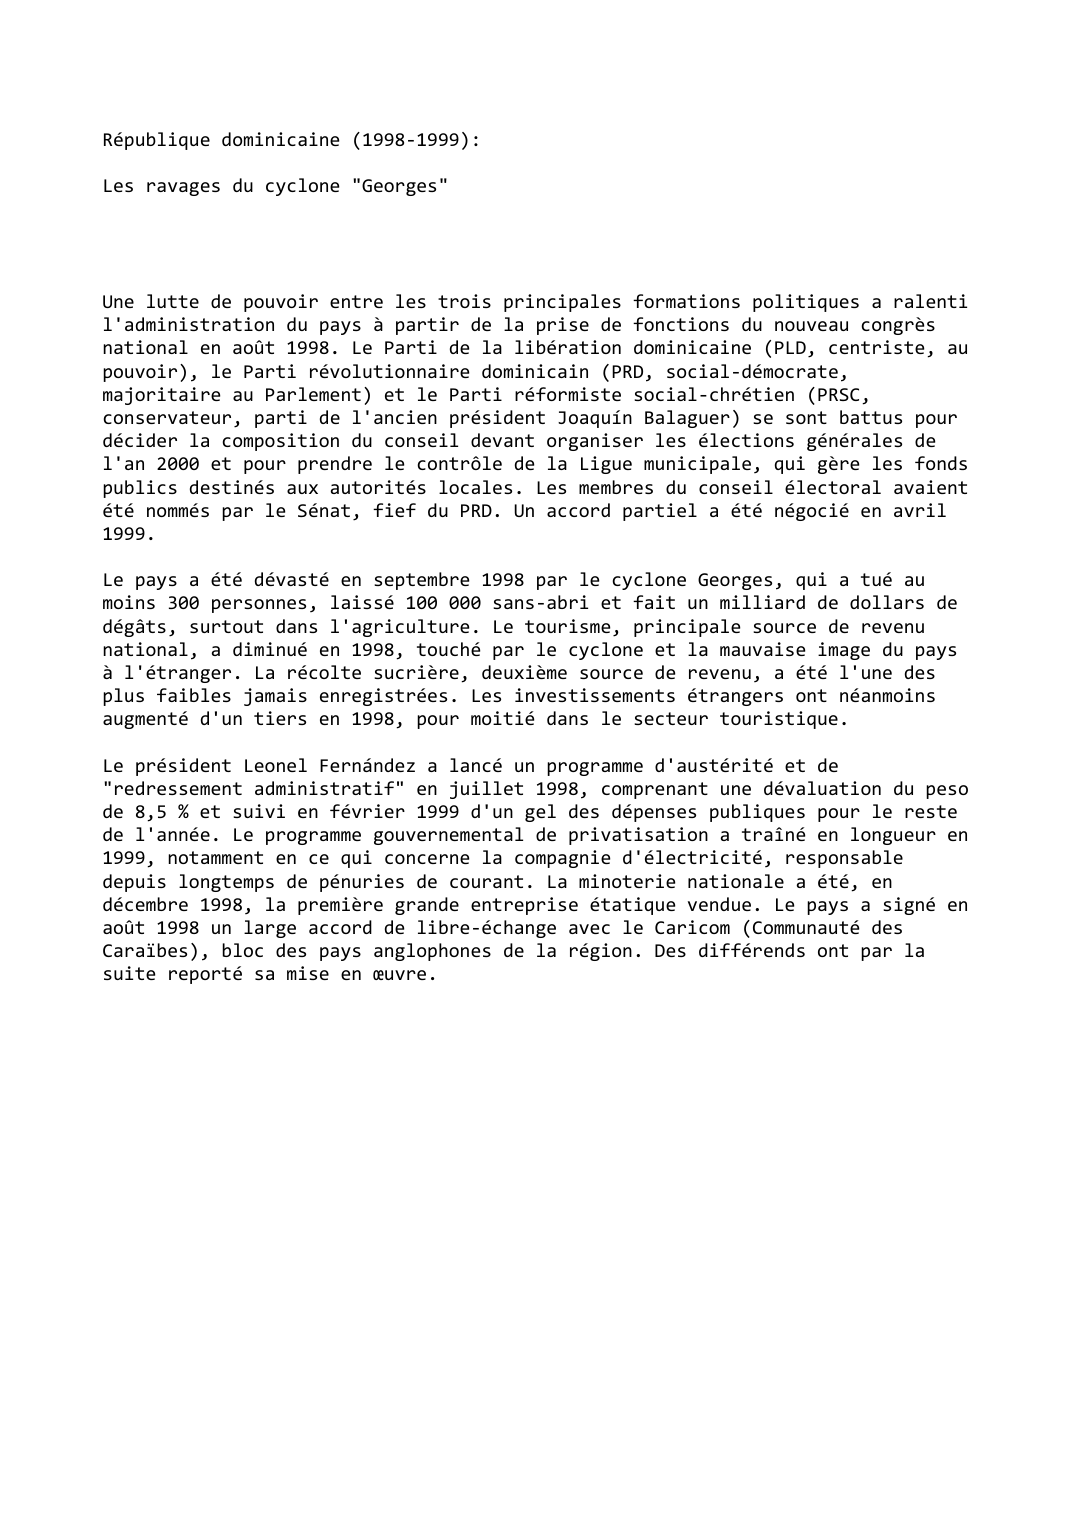 Prévisualisation du document République dominicaine (1998-1999):

Les ravages du cyclone "Georges"